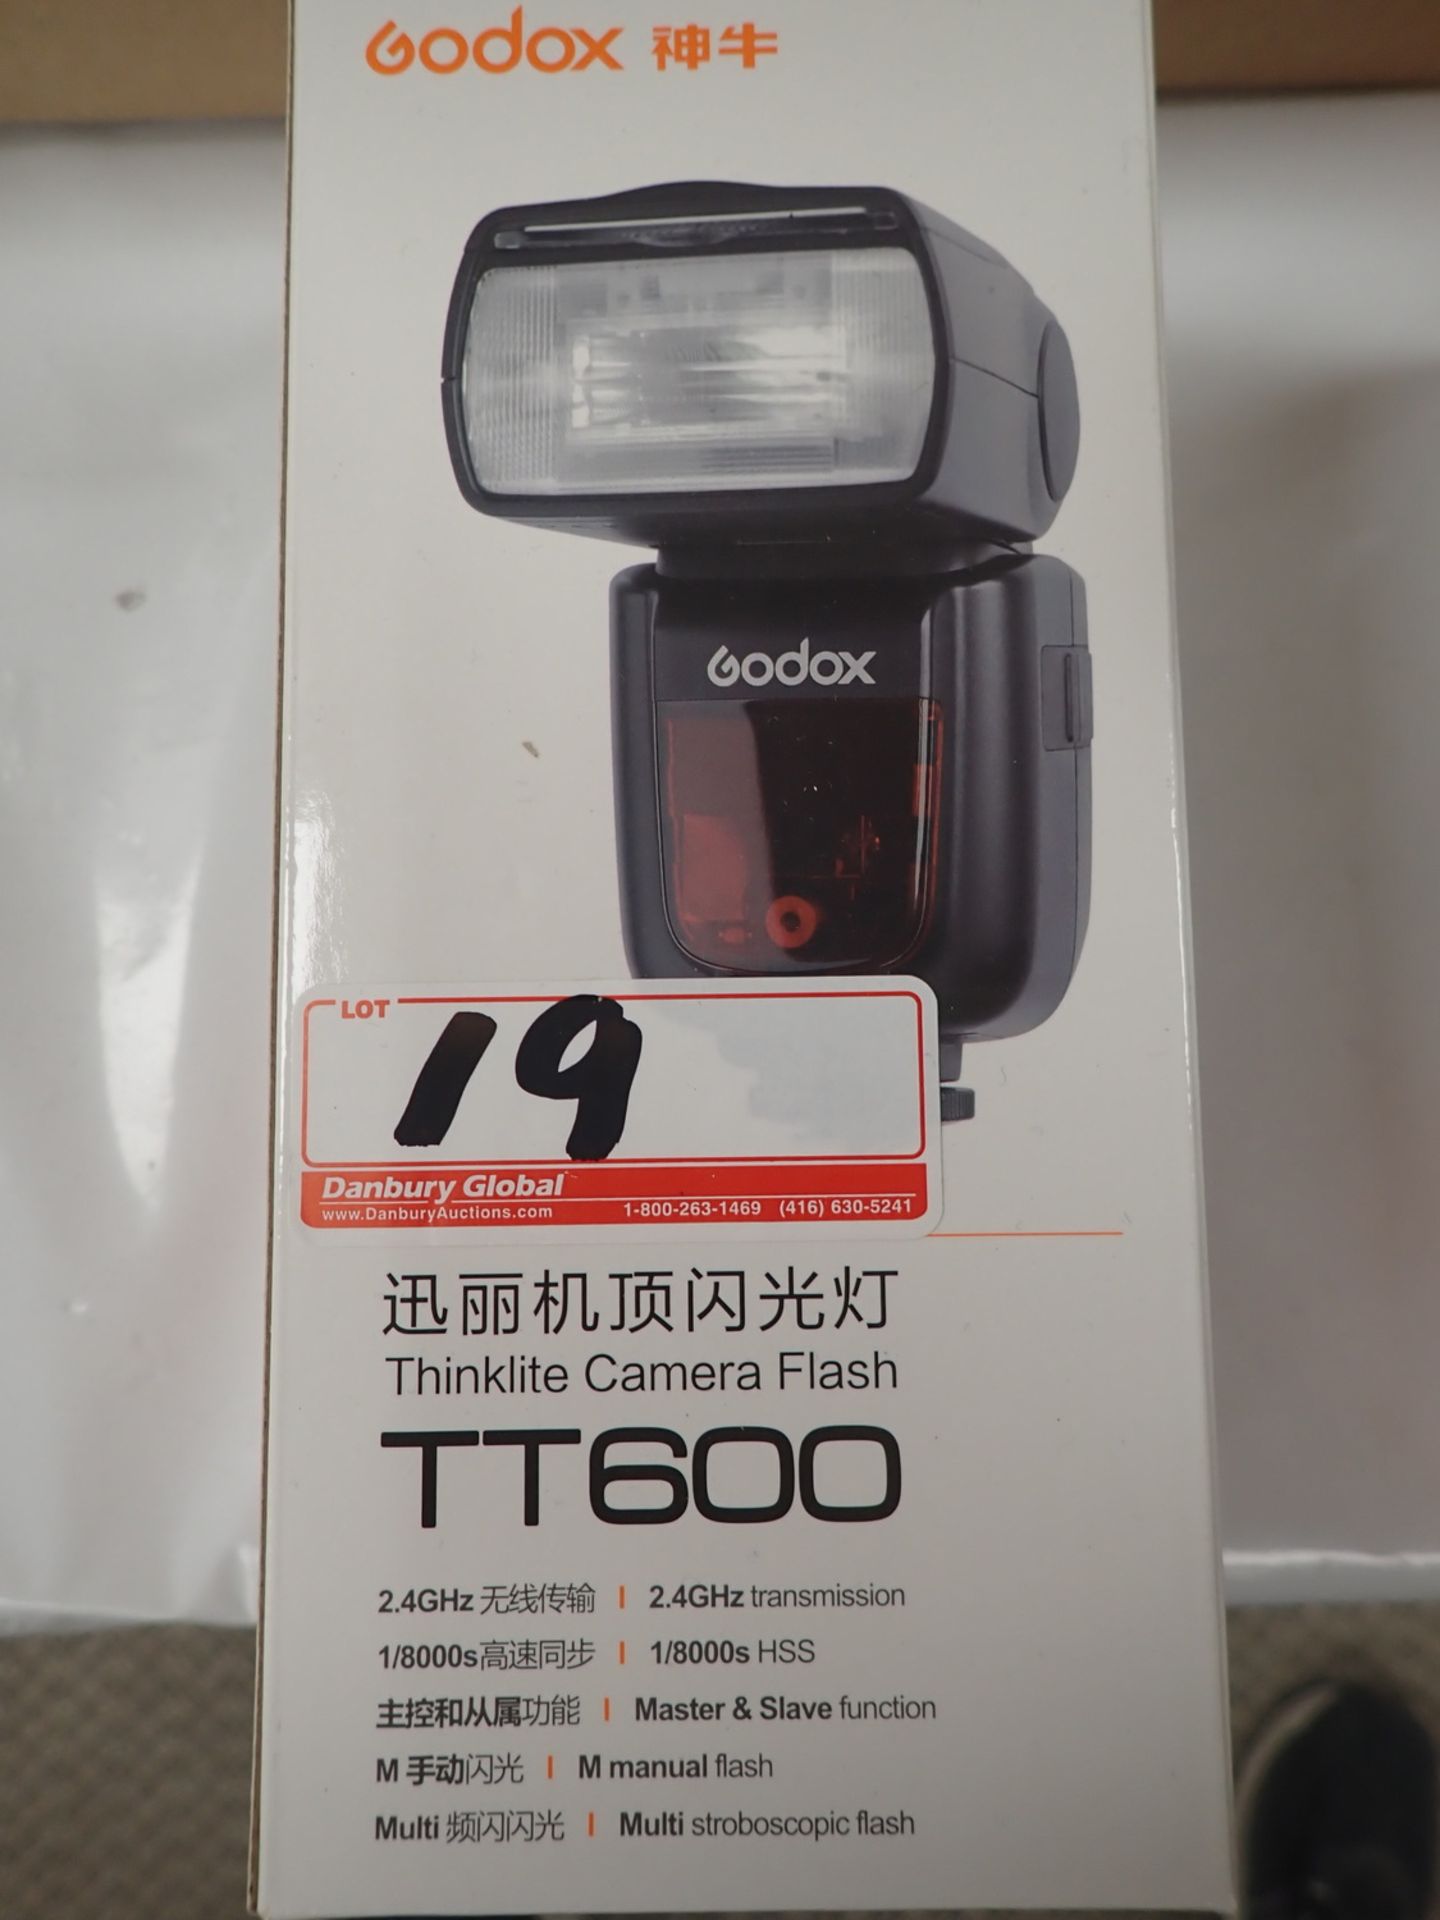 GODOX TT600 THINLITE CAMERA FLASHES